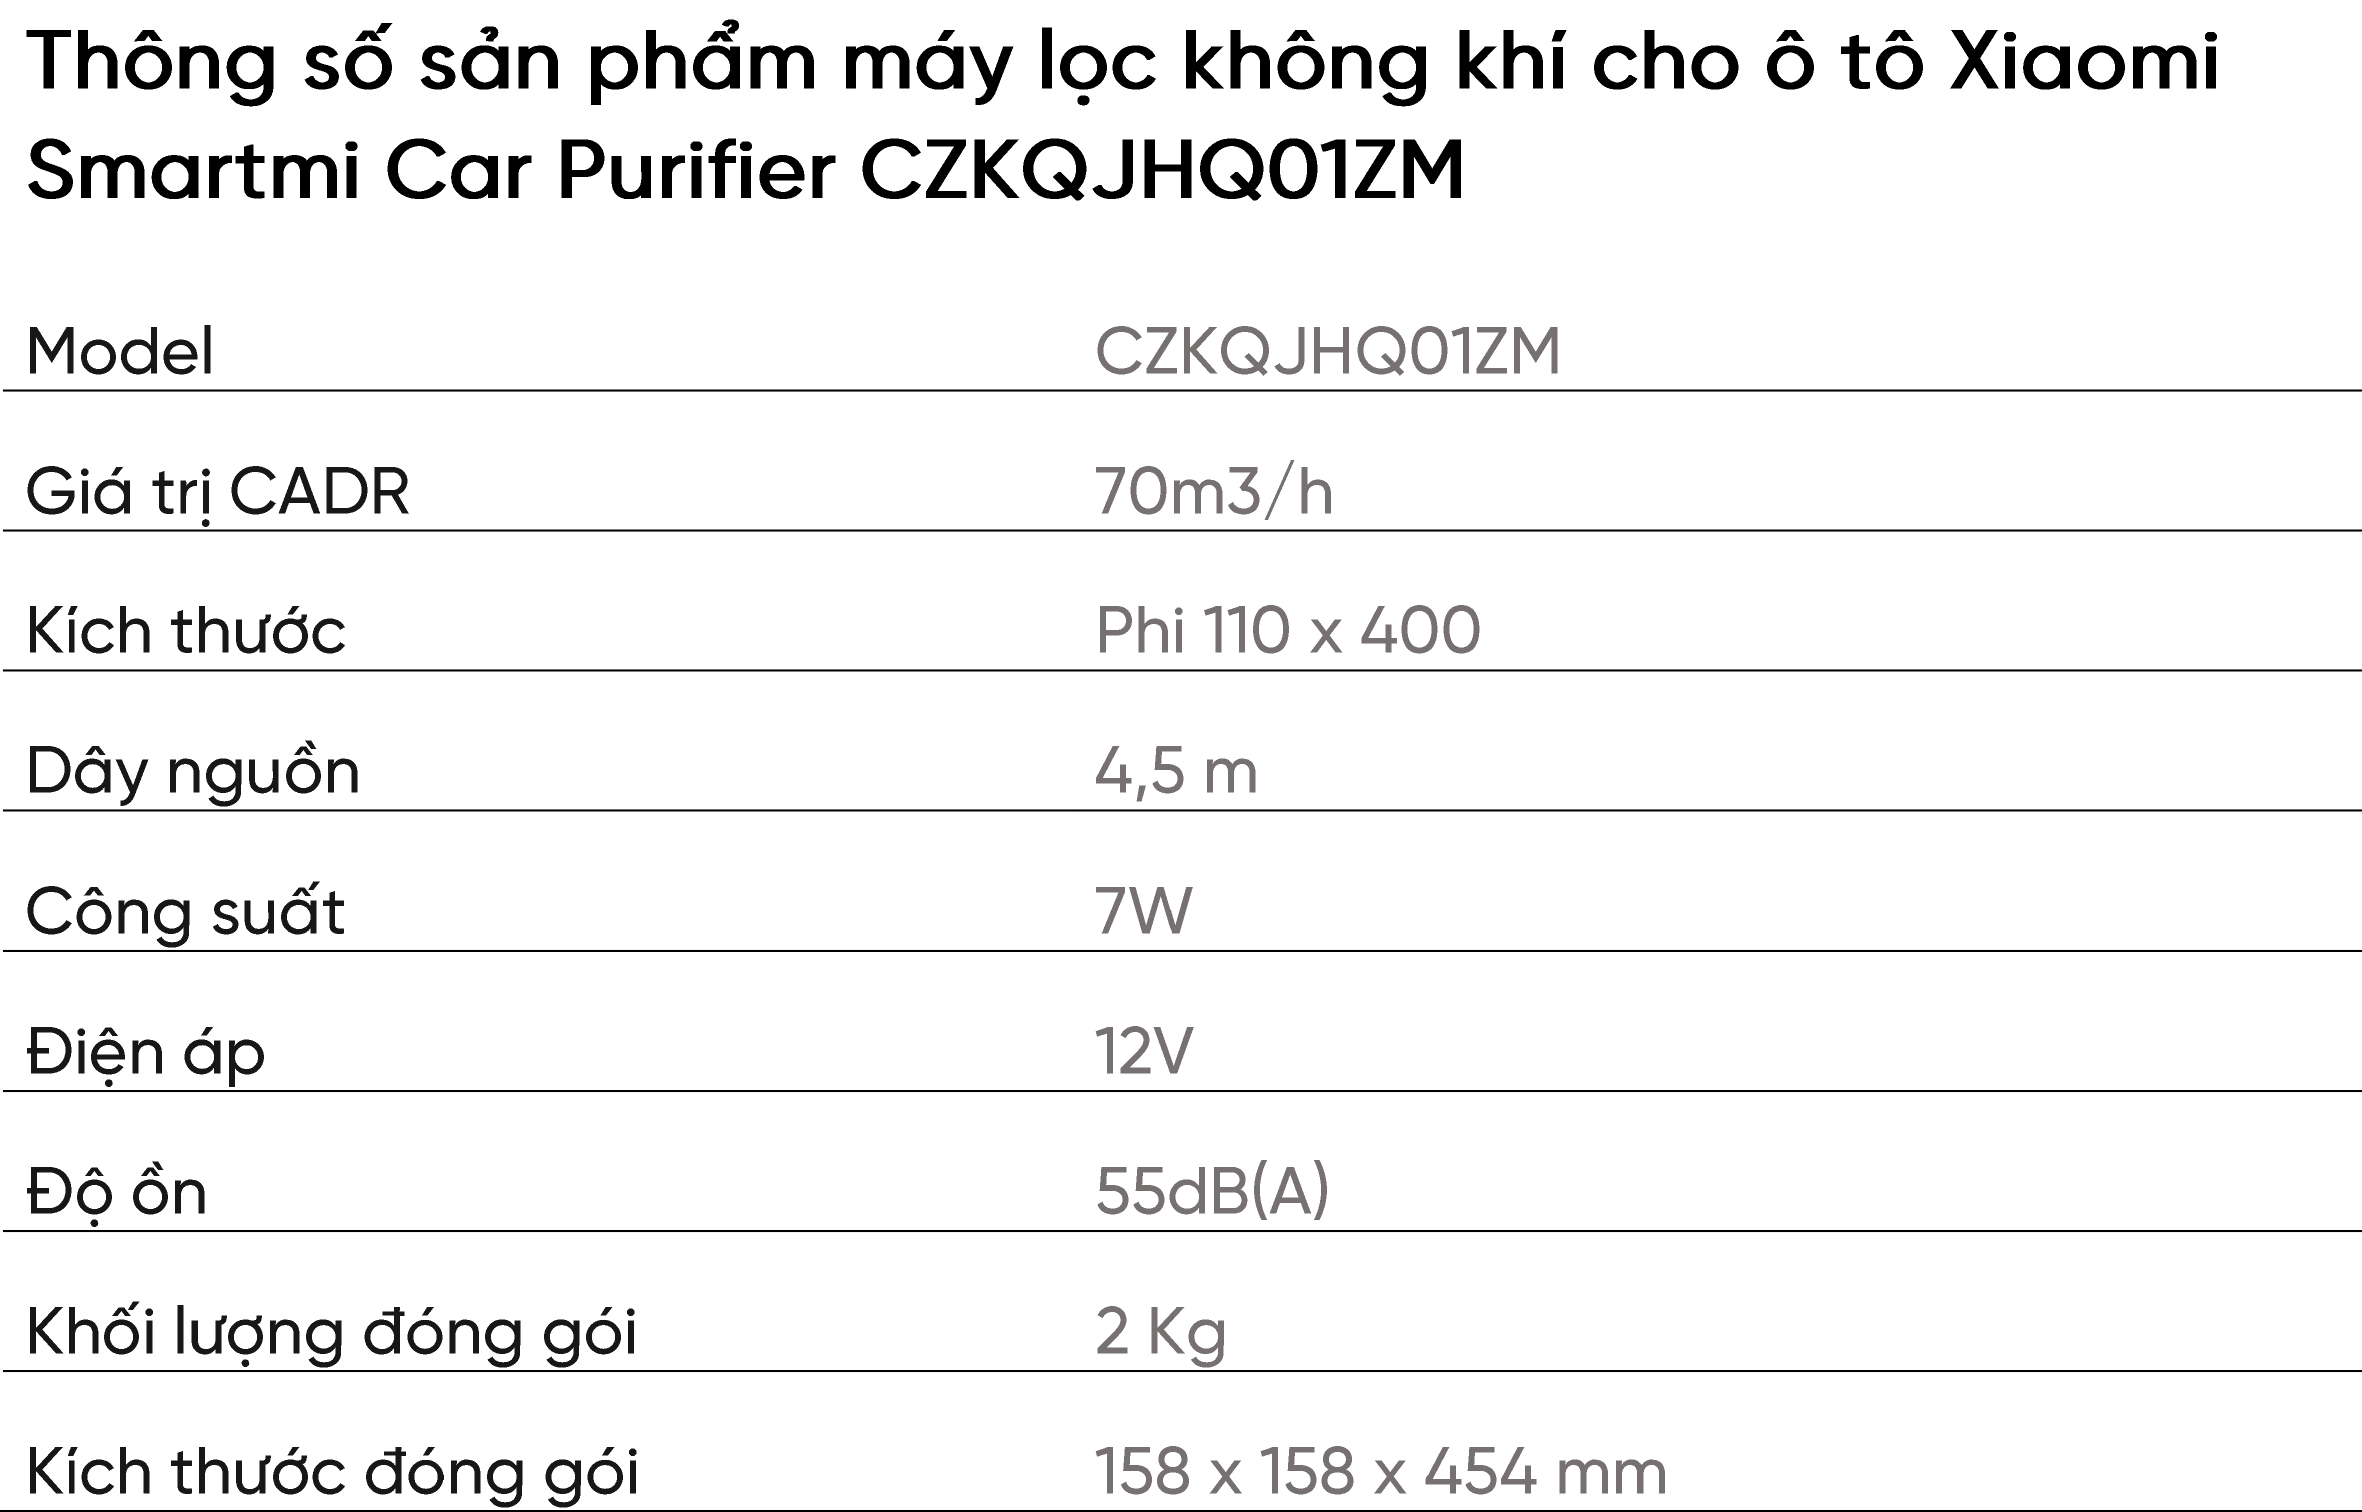 Máy lọc không khí cho ô tô Xiaomi Smartmi Car Purifier CZKQJHQ01ZM